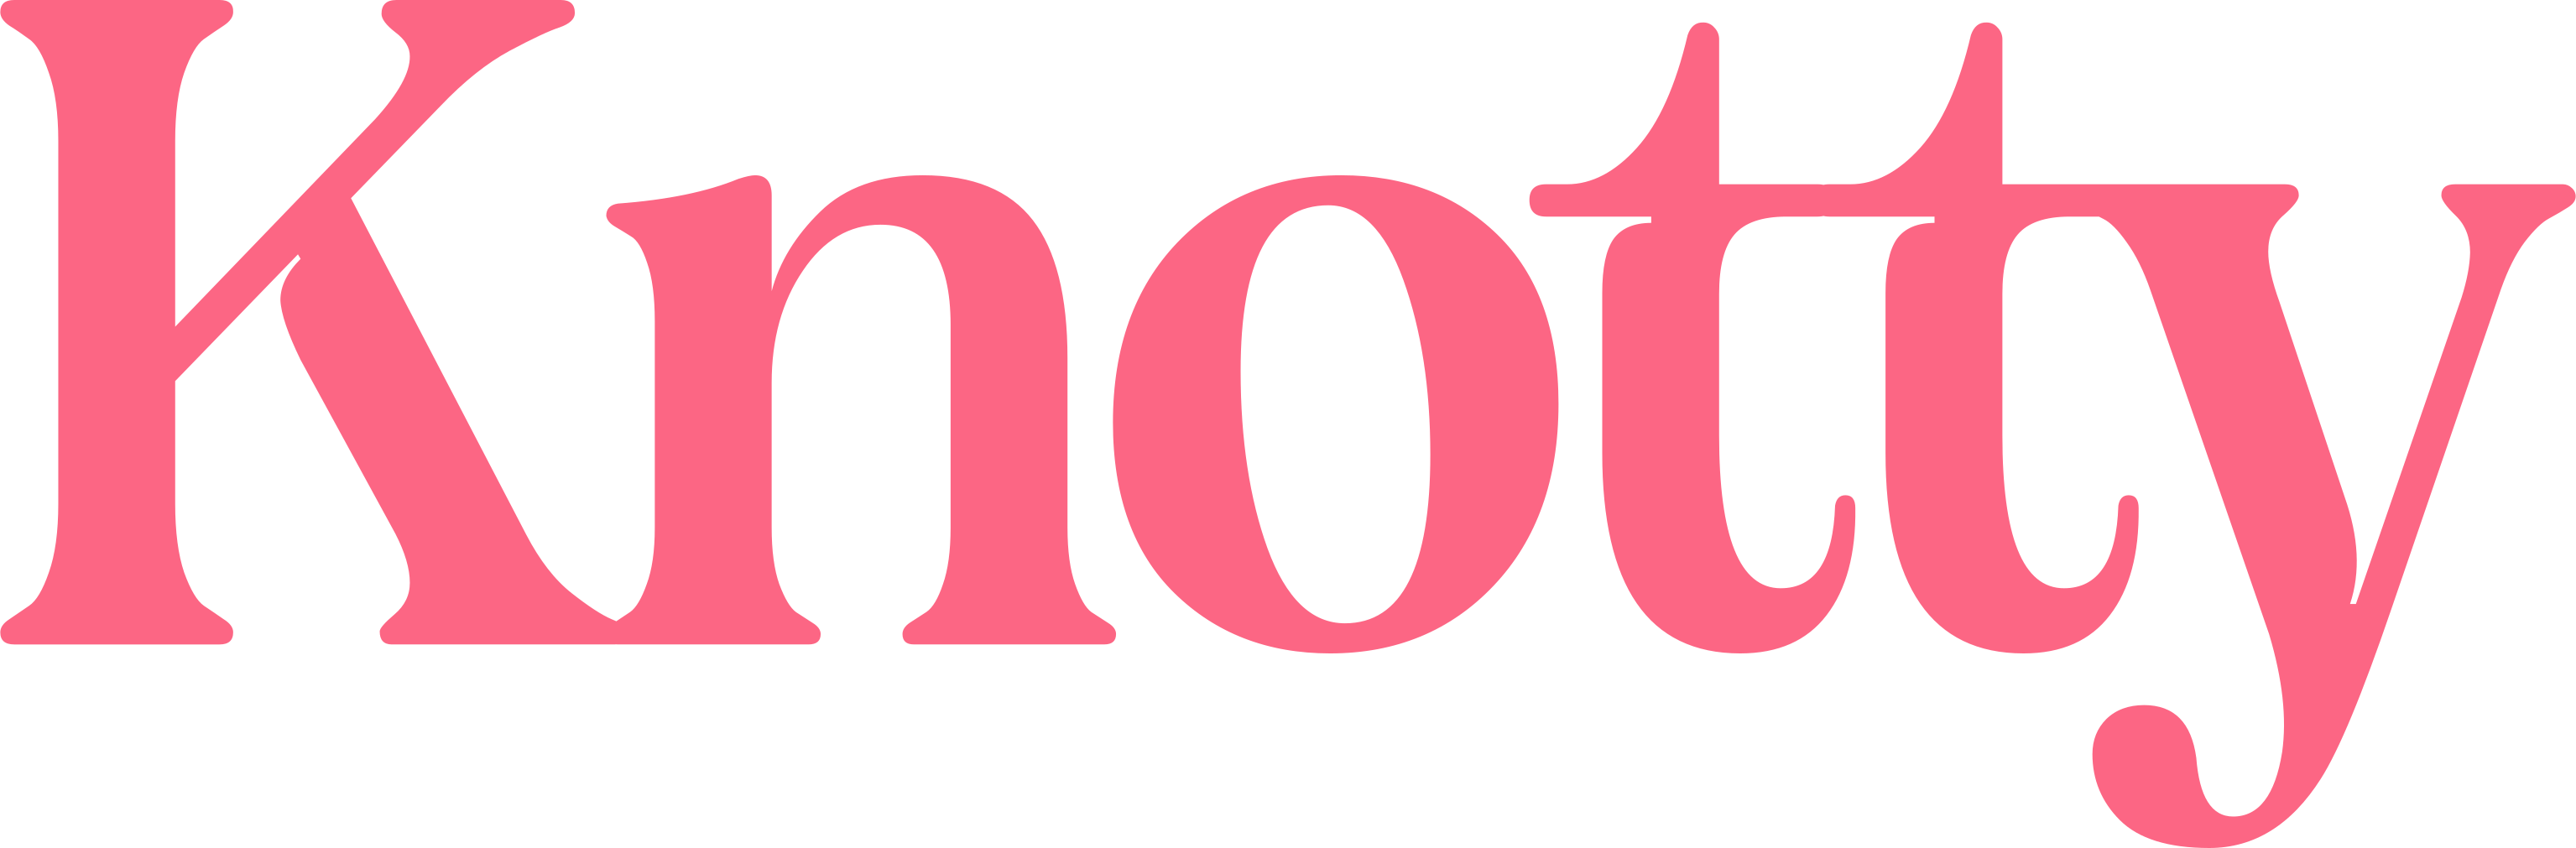 logo-pink.png